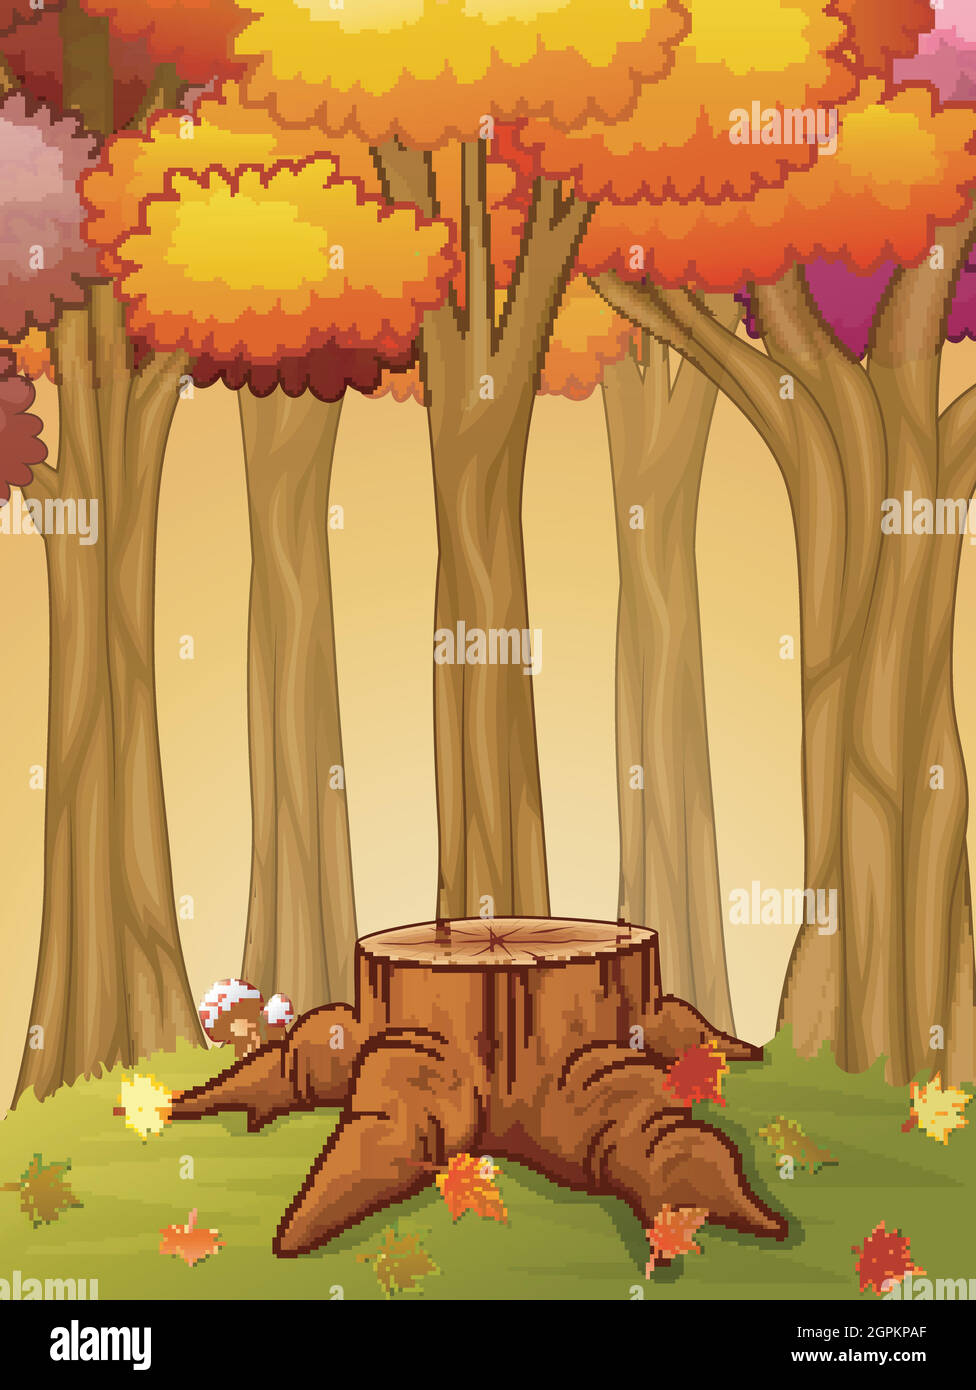 Souche d'arbre et champignon dans la forêt d'automne Illustration de Vecteur